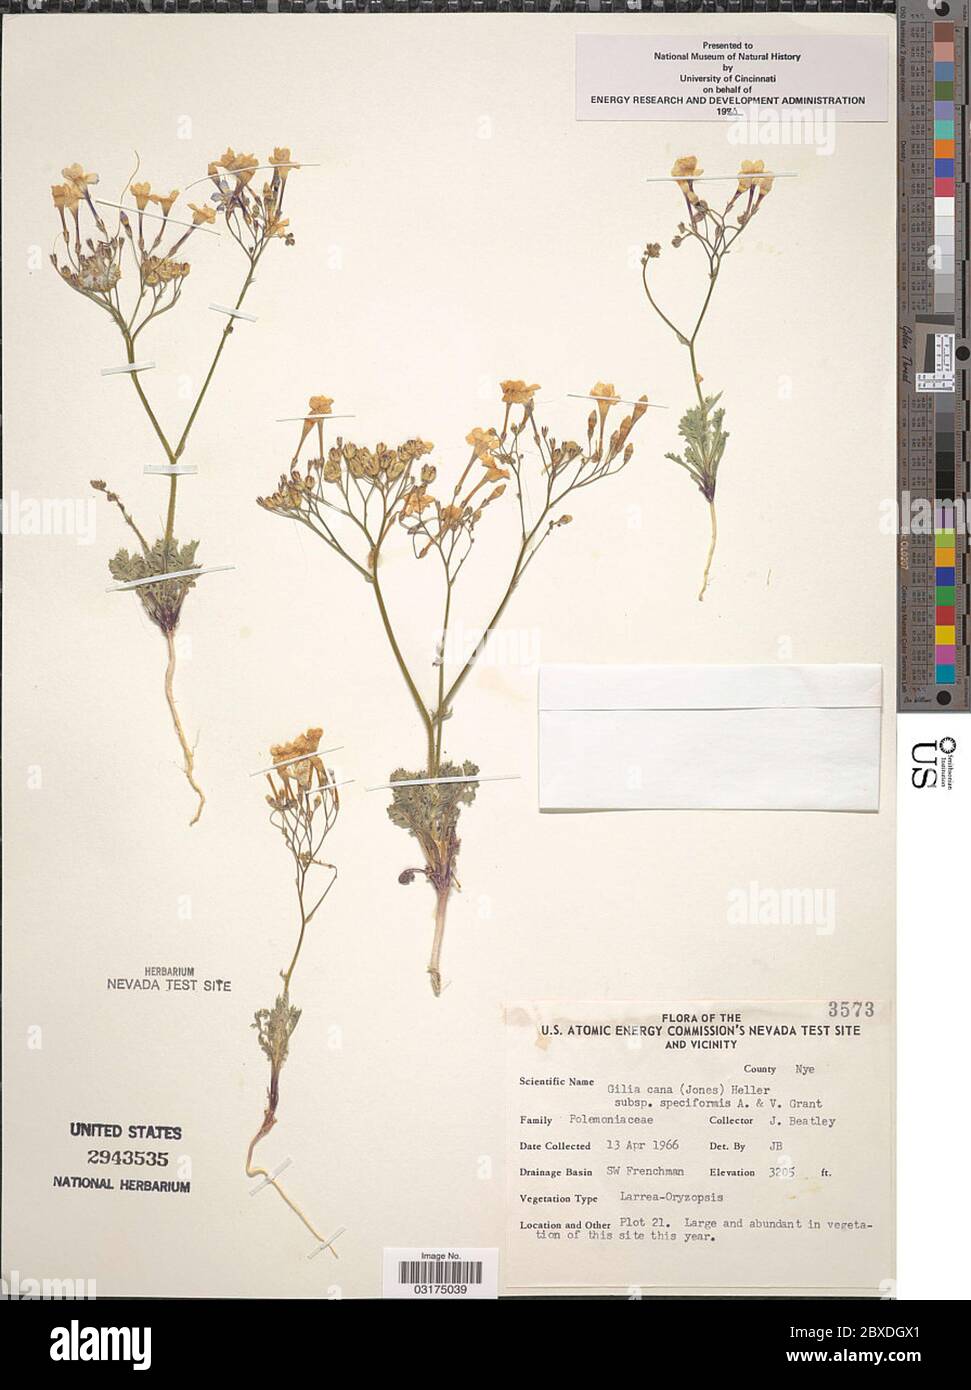 Gilia cana subsp speciformis AD Grant VE Grant Gilia cana subsp speciformis AD Grant VE Grant. Stock Photo